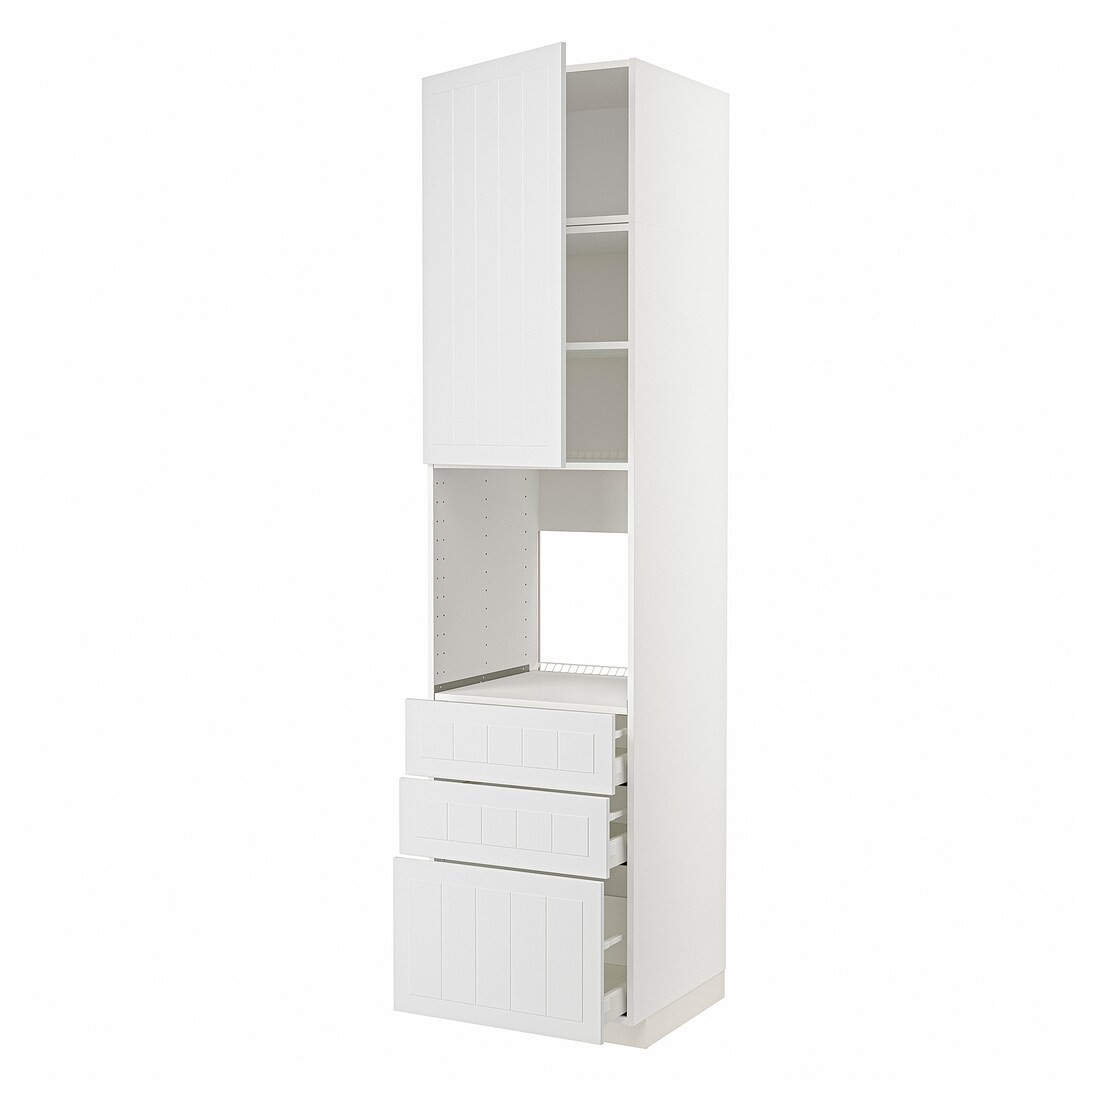 METOD МЕТОД / MAXIMERA МАКСИМЕРА Высокий шкаф для духовки, белый / Stensund белый, 60x60x240 см